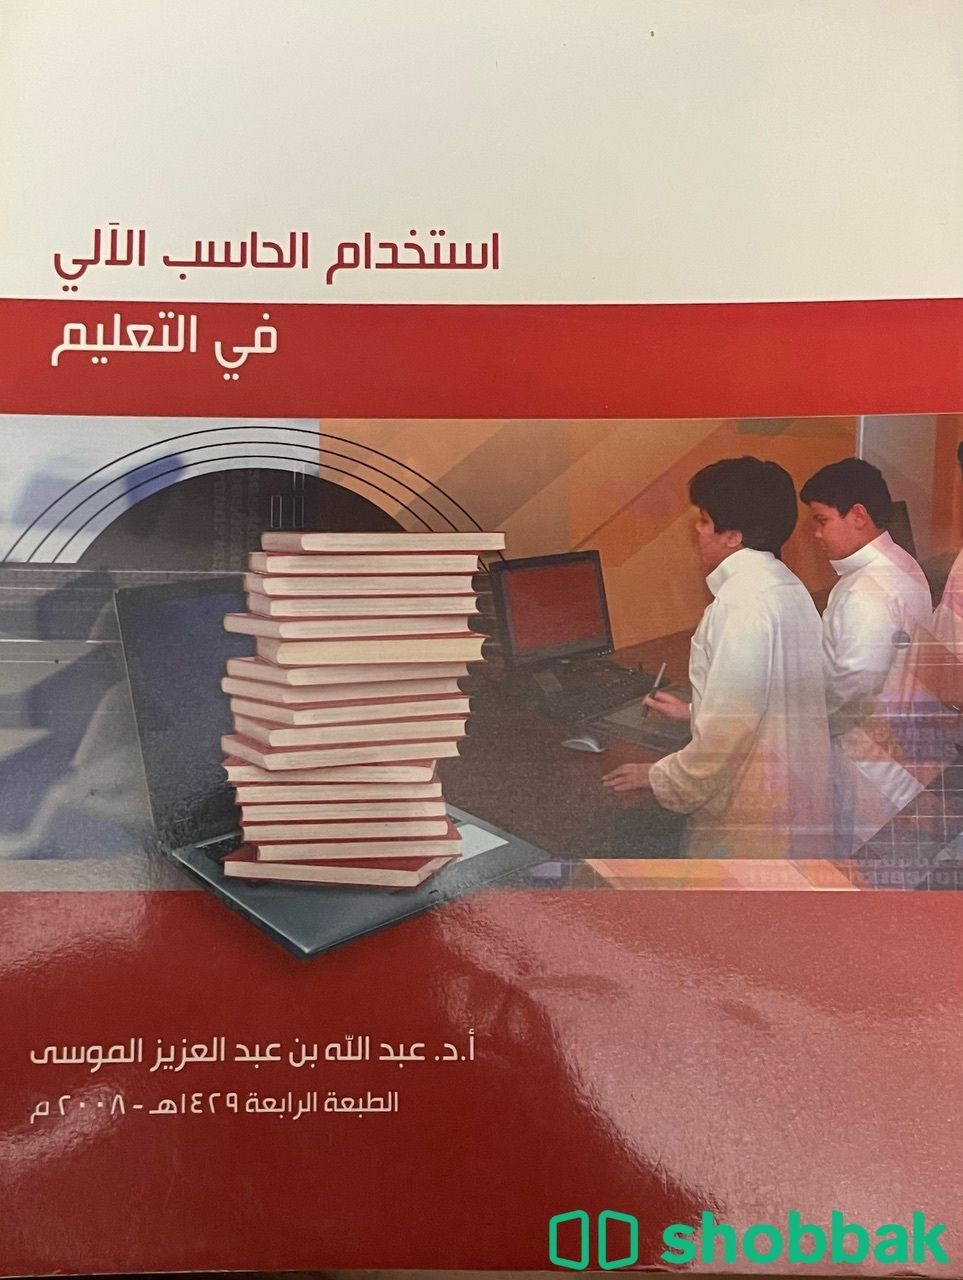 كتاب استخدام الحاسب الآلي في التعليم30 Shobbak Saudi Arabia